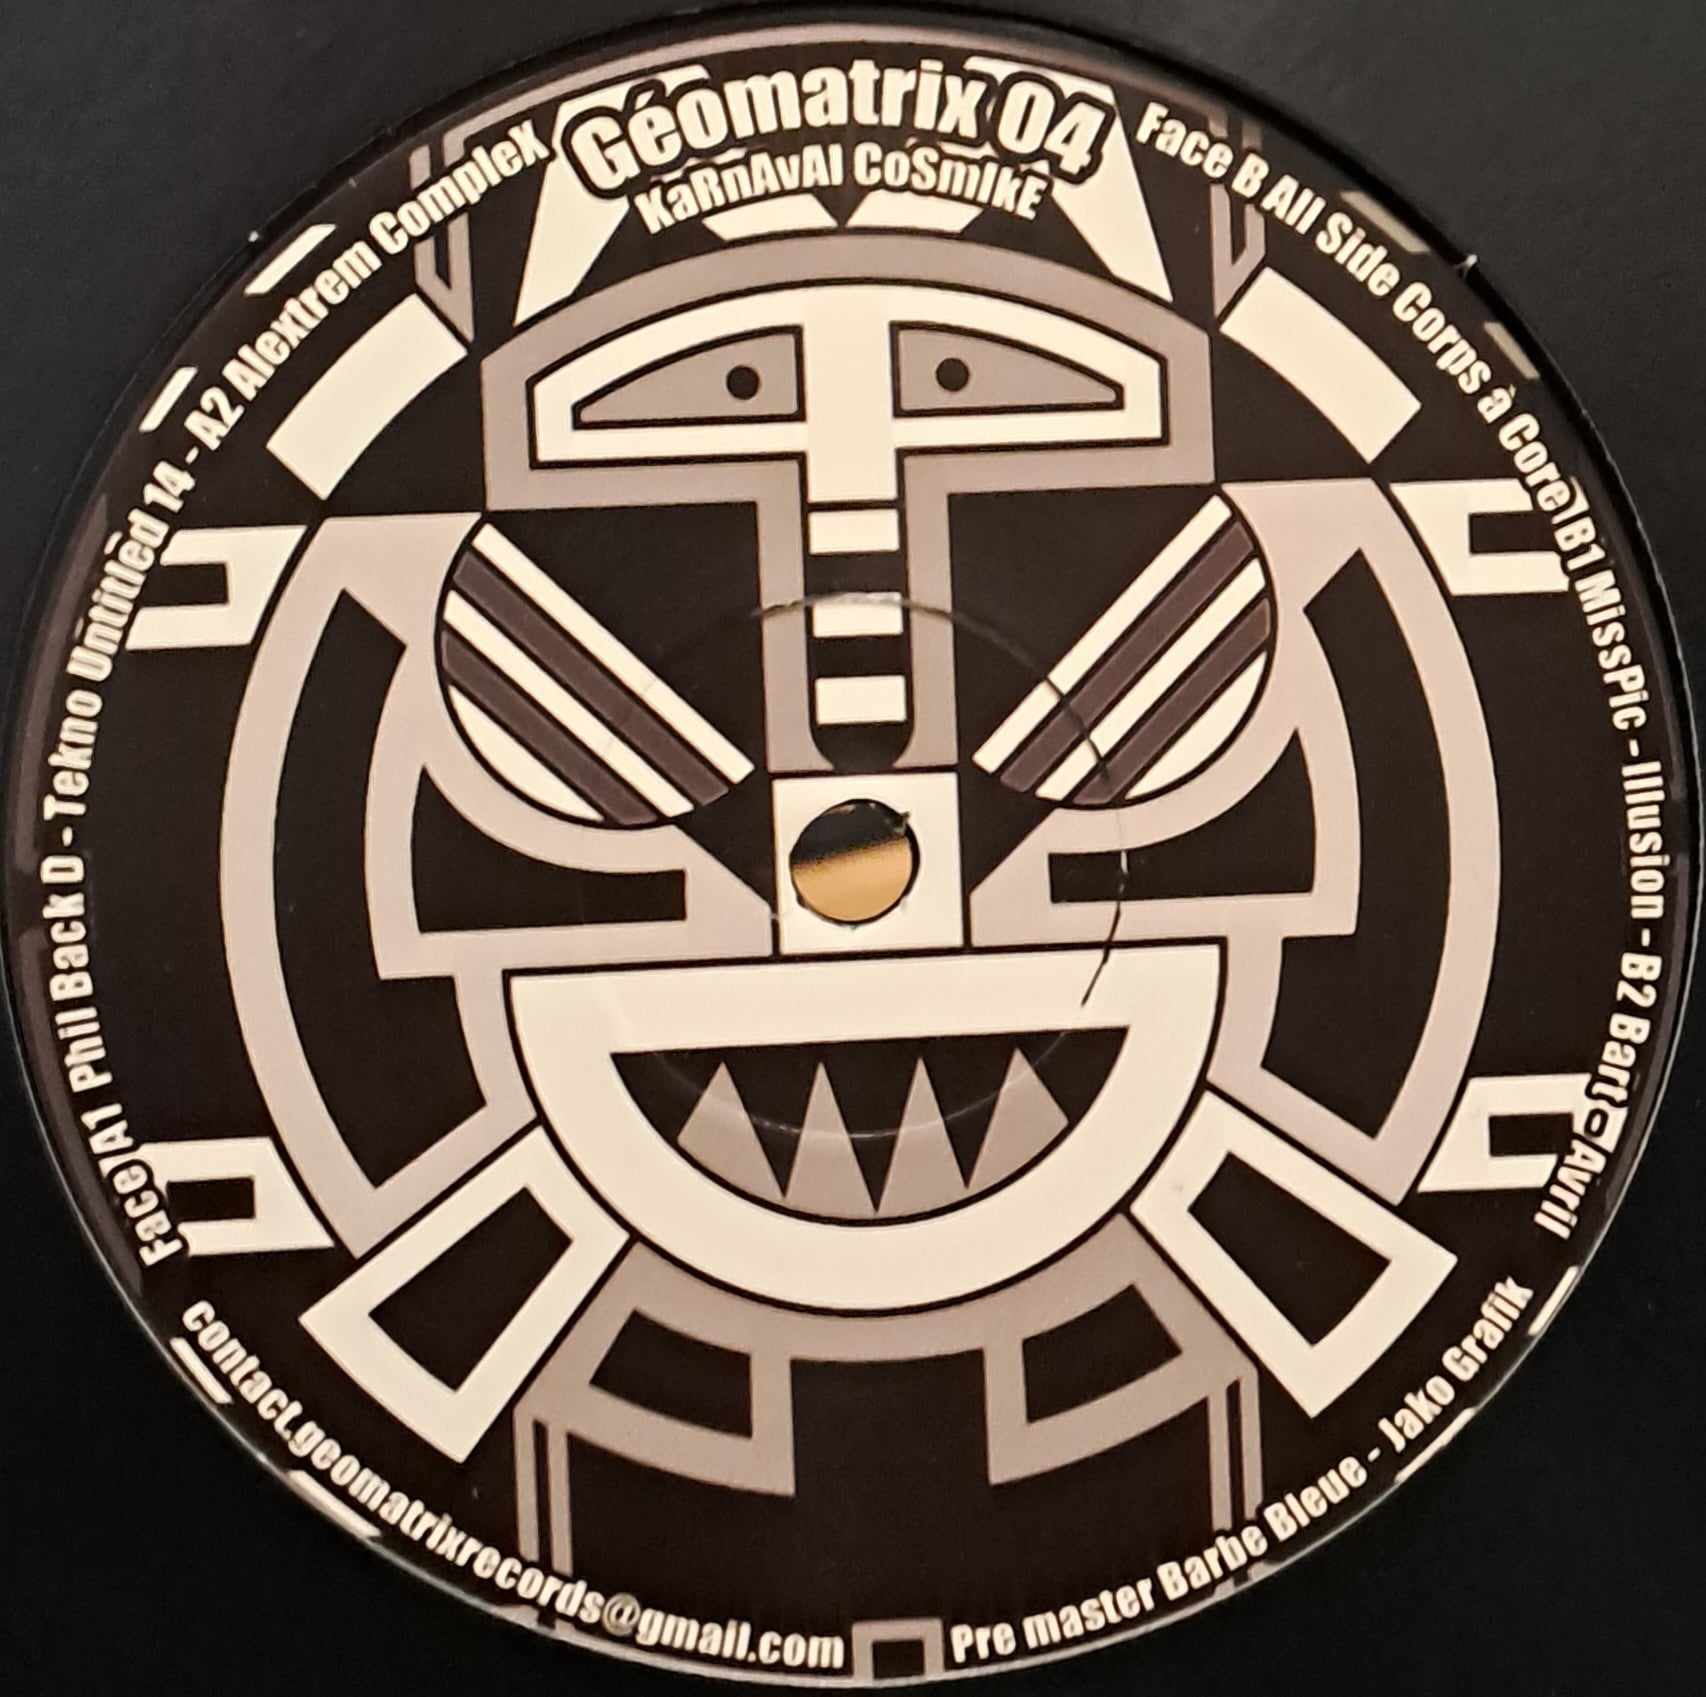 Géomatrix 04 (toute dernière copie en stock) - vinyle freetekno